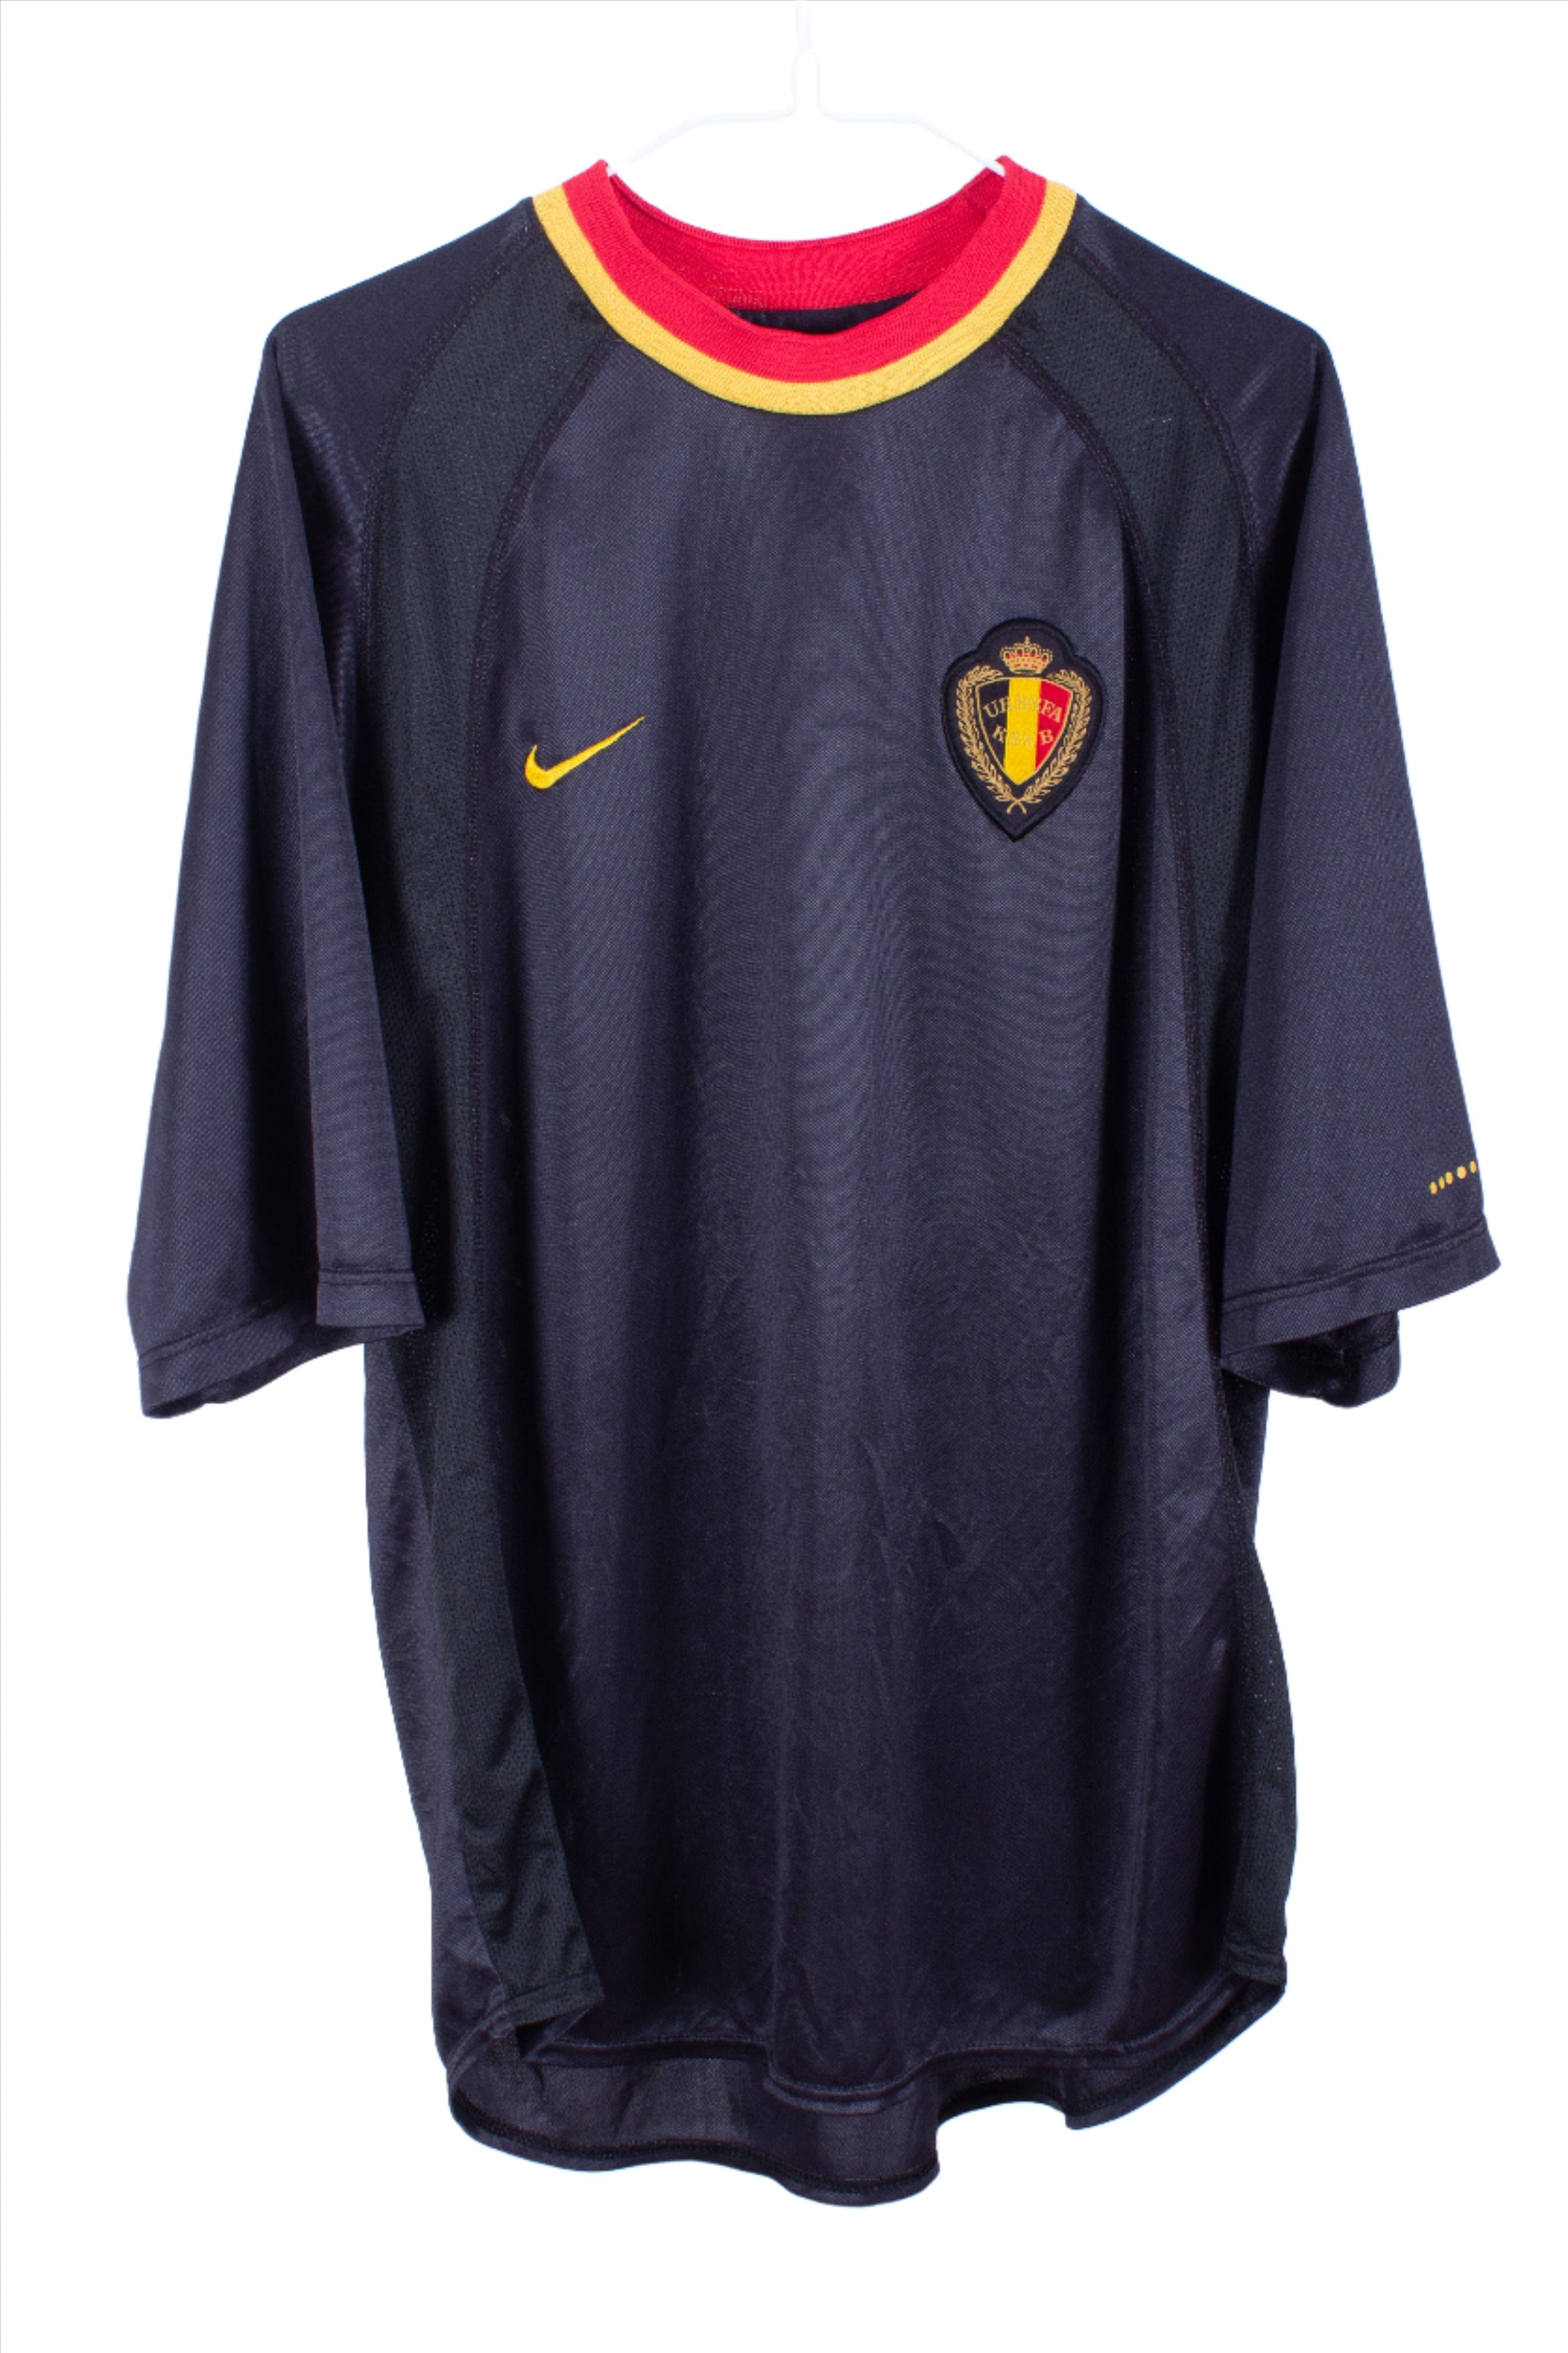 Belgium 2000 Away Shirt